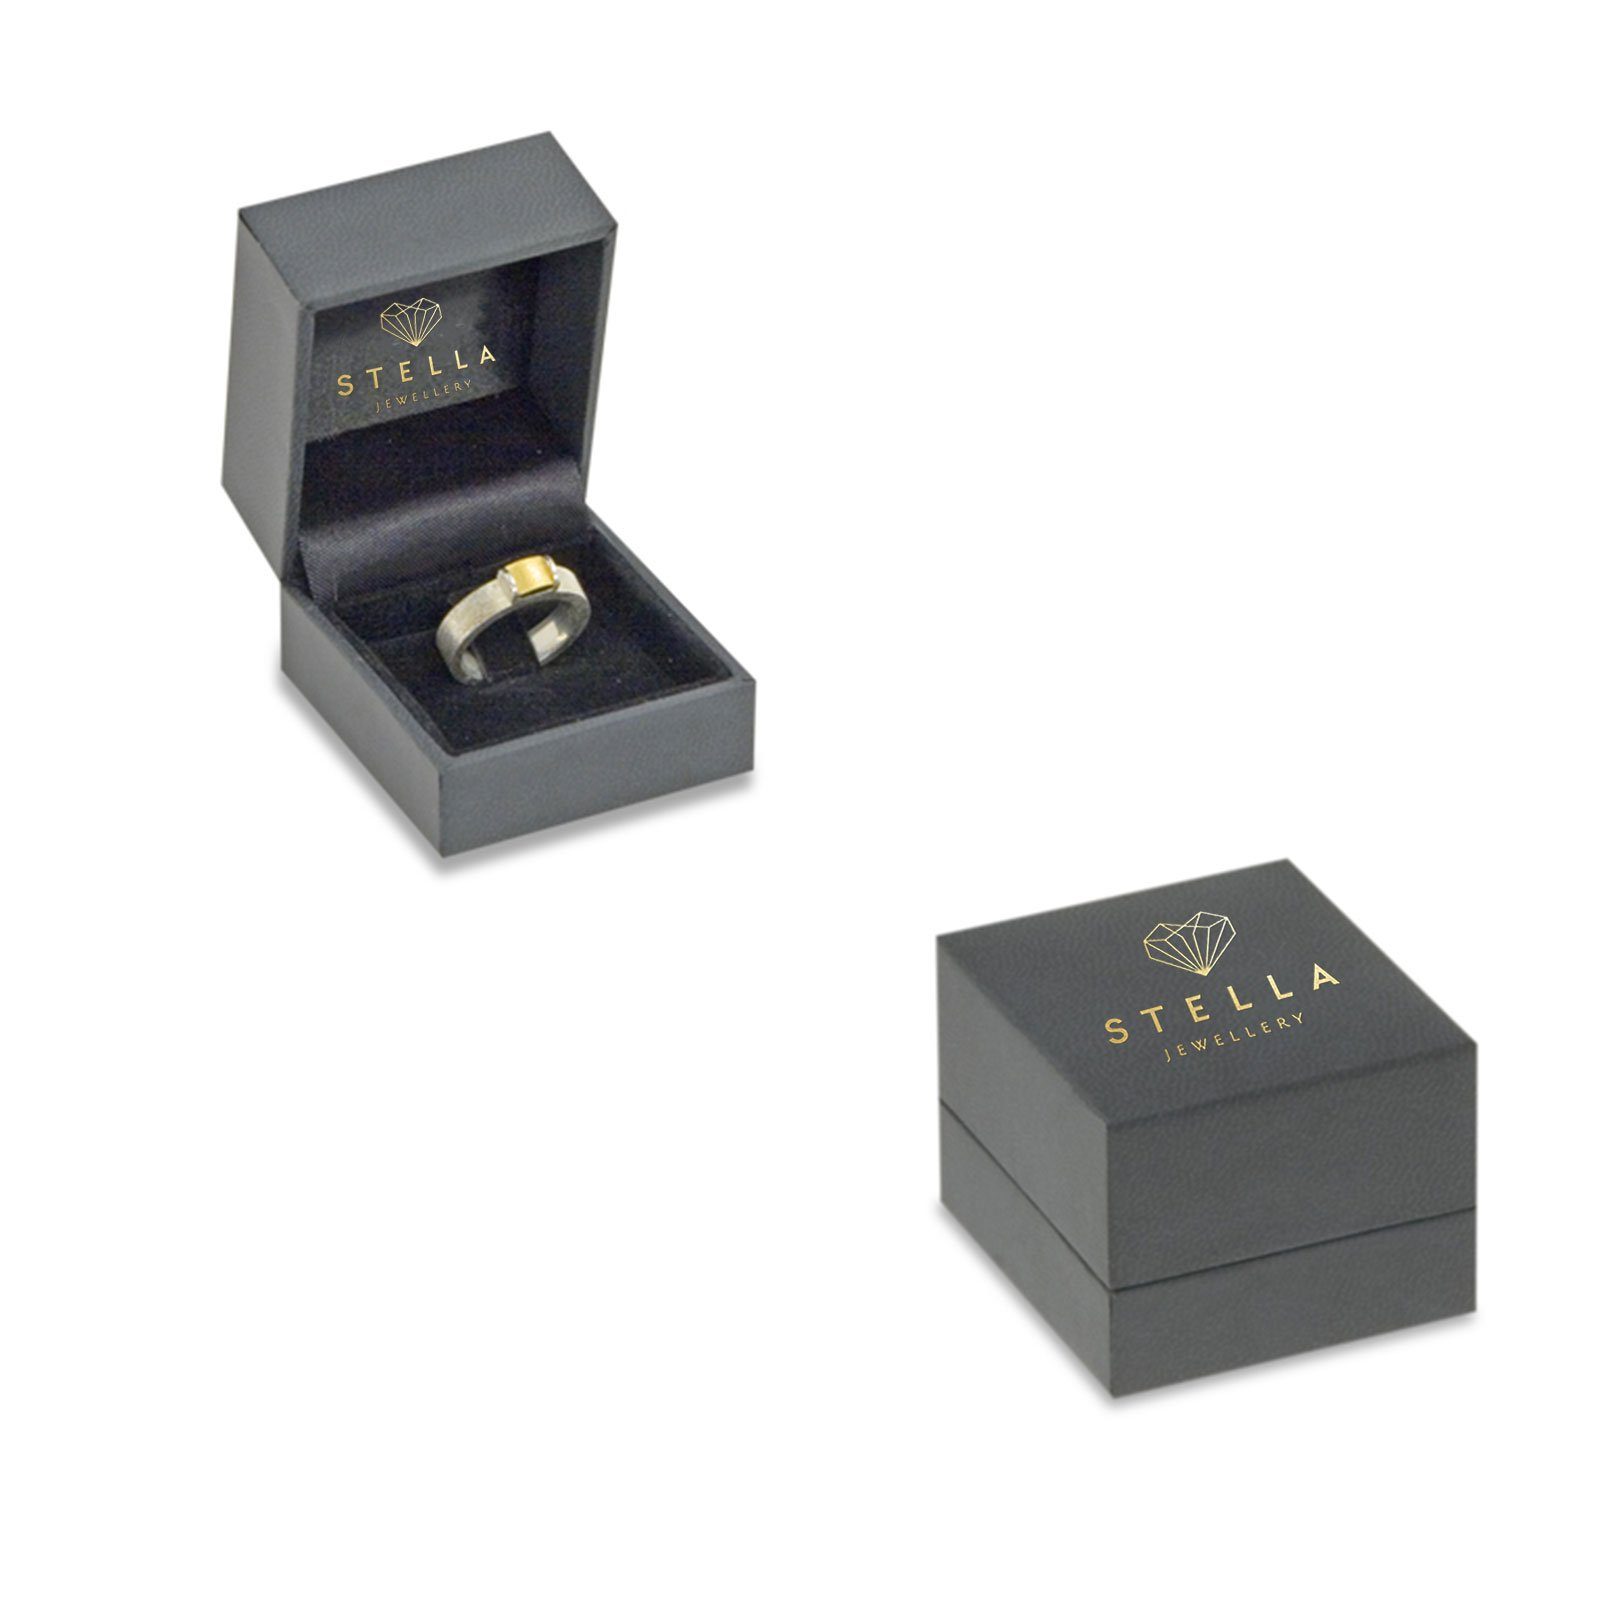 Brillant Verlobungsring - - 0,25ct. mit Poliert Stella-Jewellery (inkl. 54 585er Gelbgold Gr. Diamant Verlobungsring Etui),